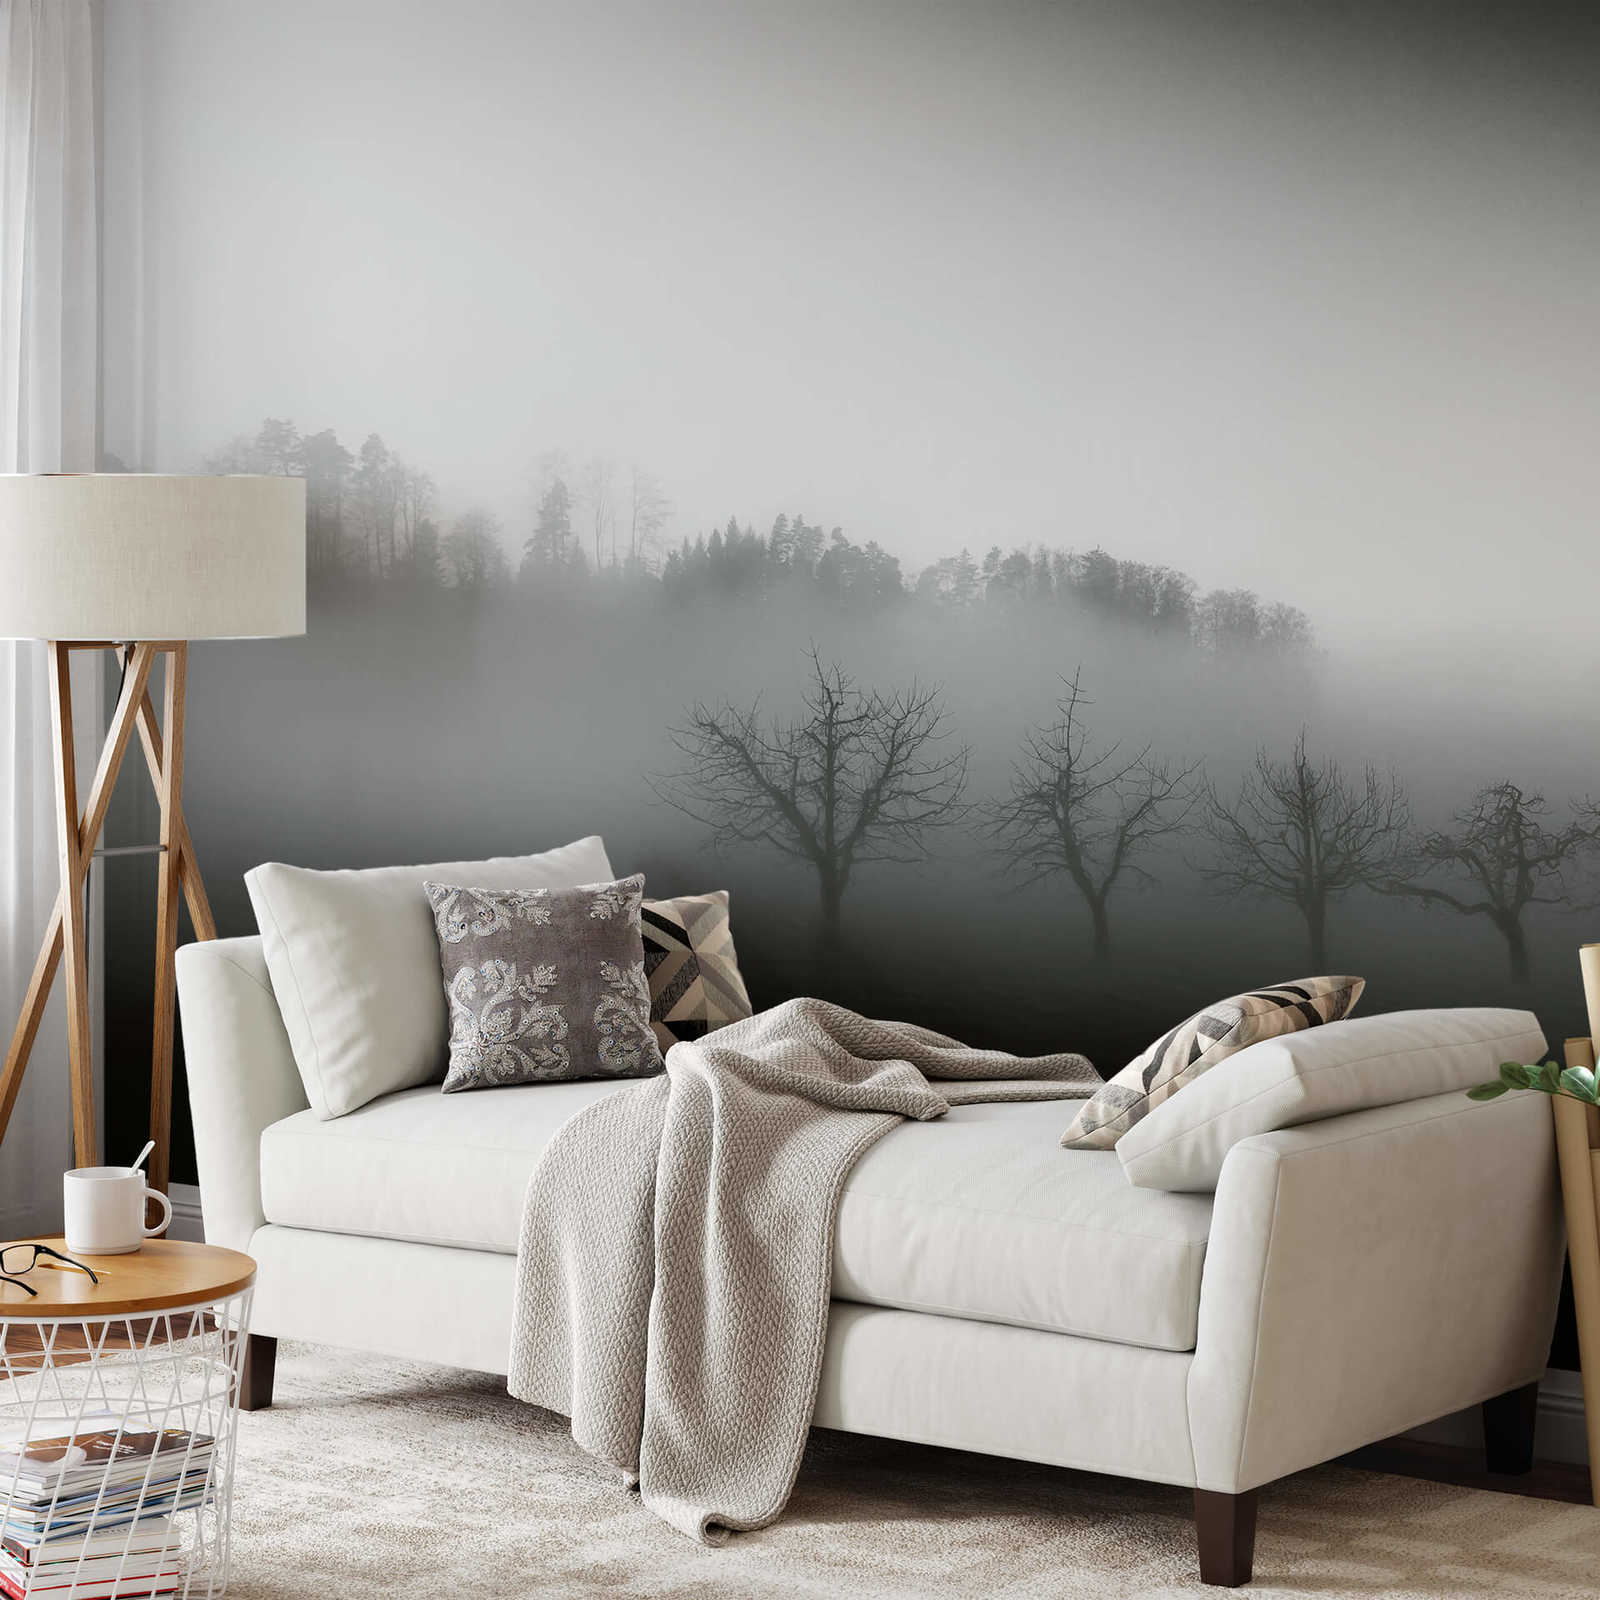             Muurschildering Landschap met Mist - Zwart, Wit, Grijs
        